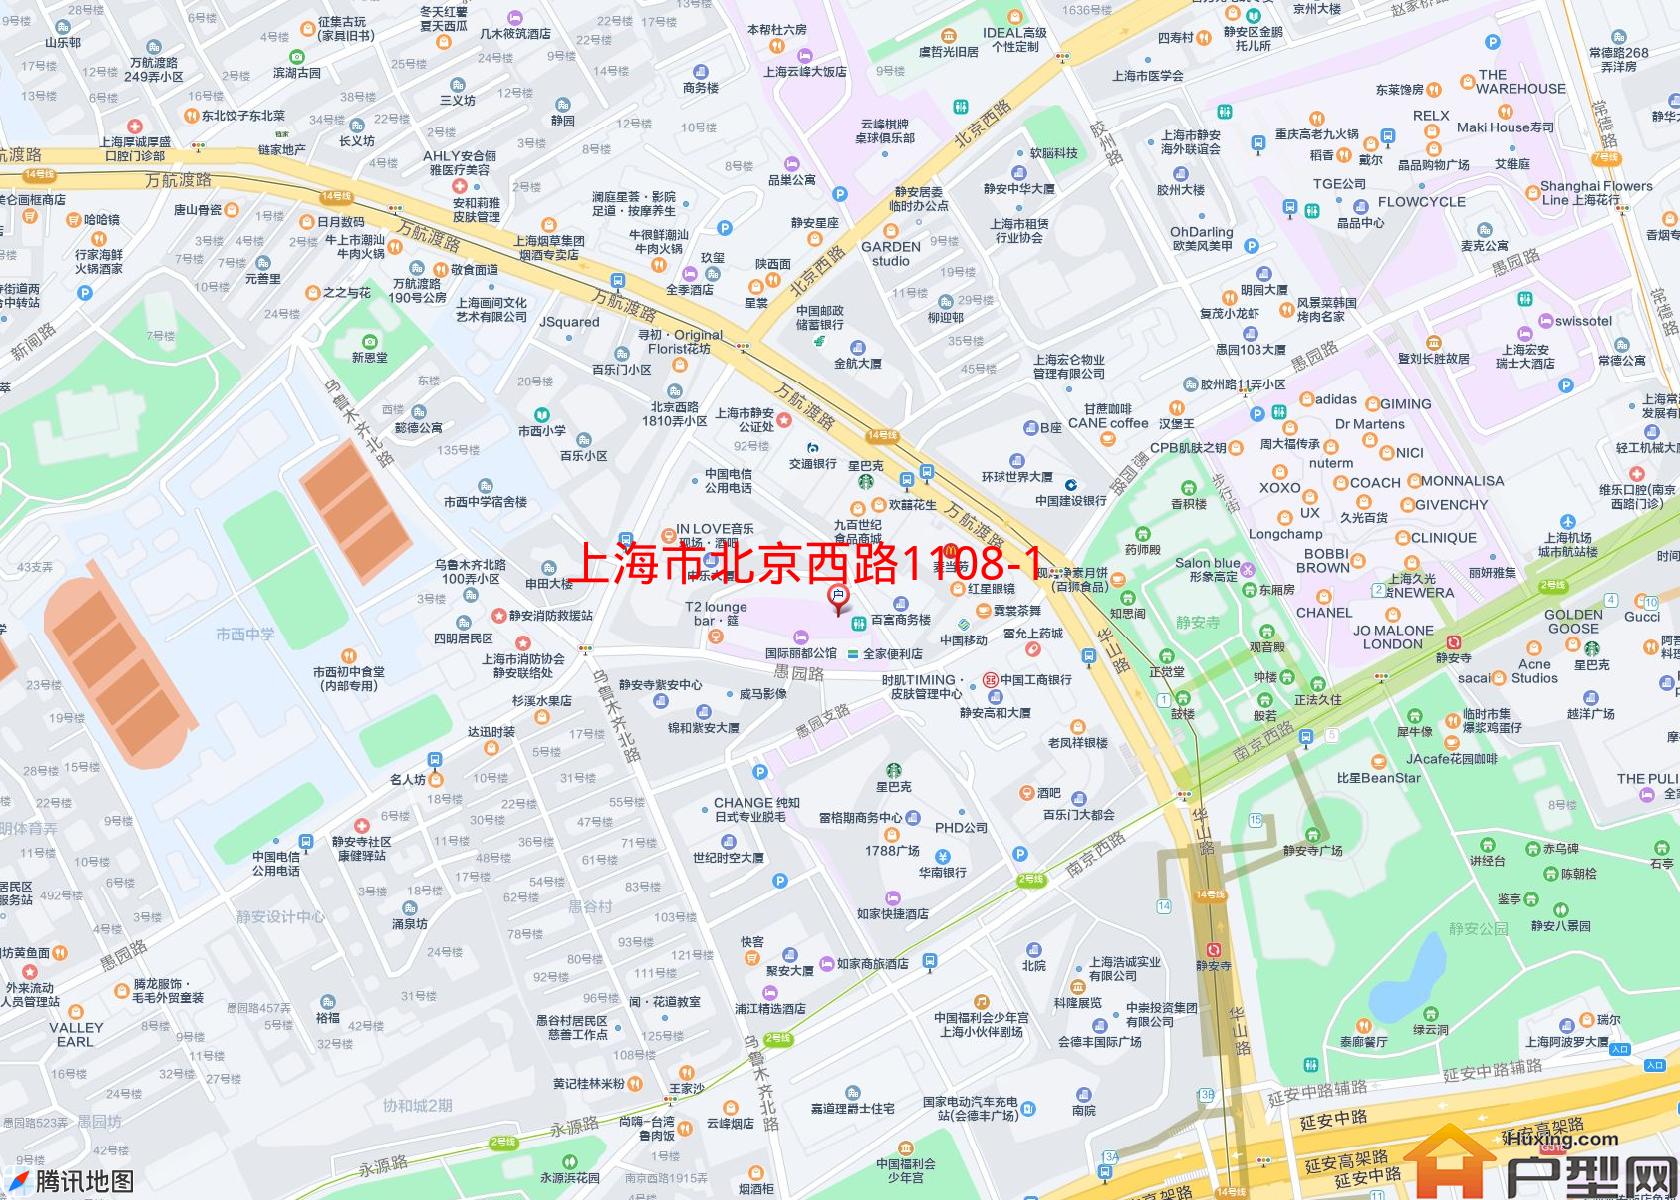 北京西路1108-1120号小区小区 - 户型网